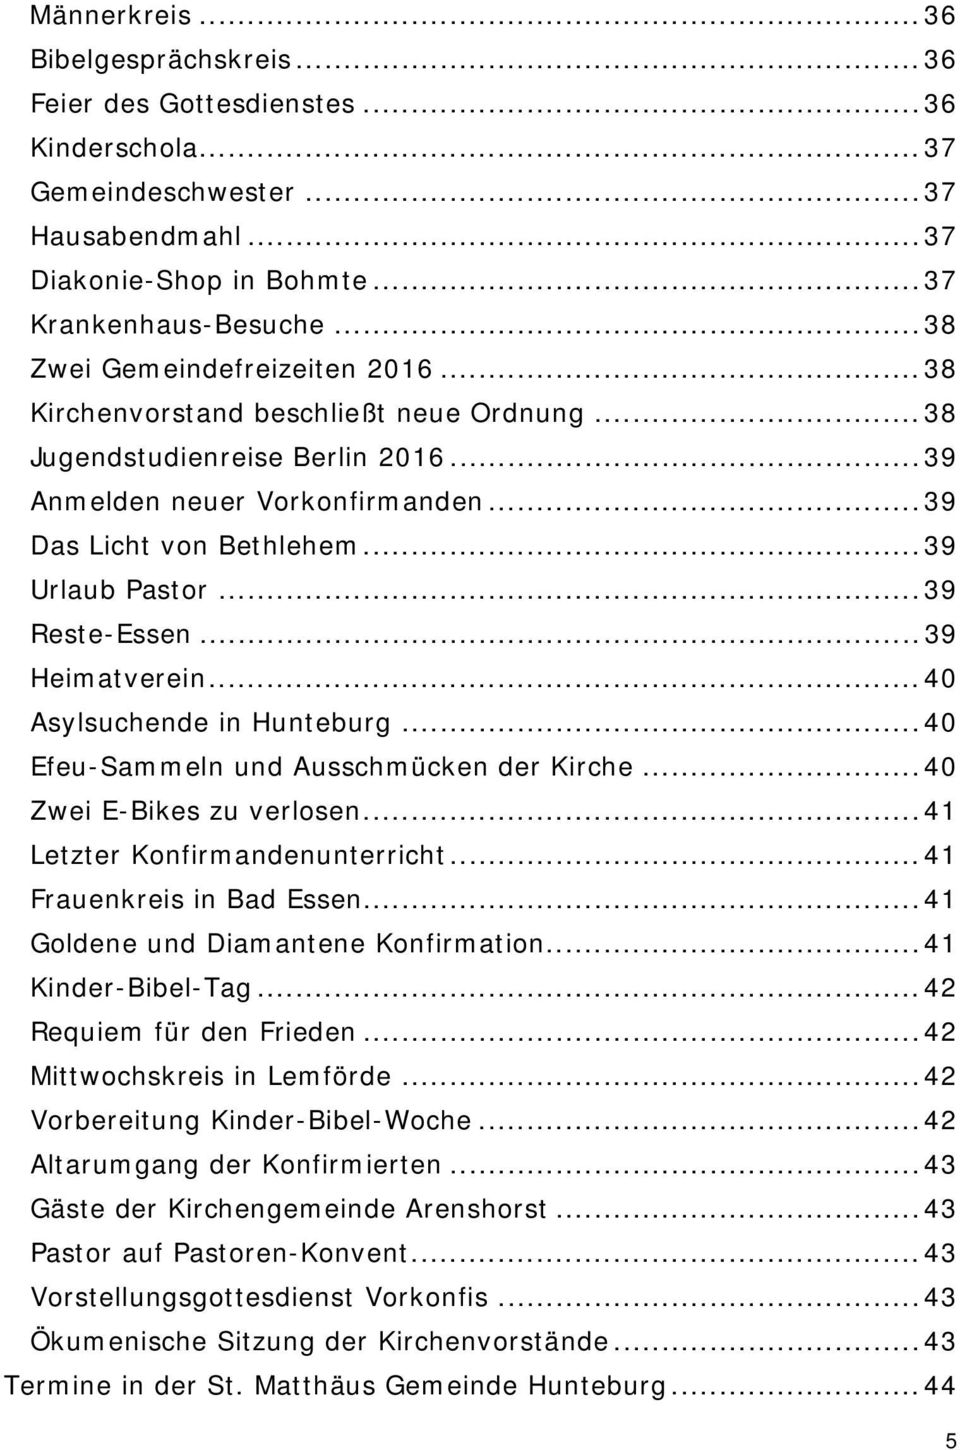 .. 39 Urlaub Pastor... 39 Reste-Essen... 39 Heimatverein... 40 Asylsuchende in Hunteburg... 40 Efeu-Sammeln und Ausschmücken der Kirche... 40 Zwei E-Bikes zu verlosen.